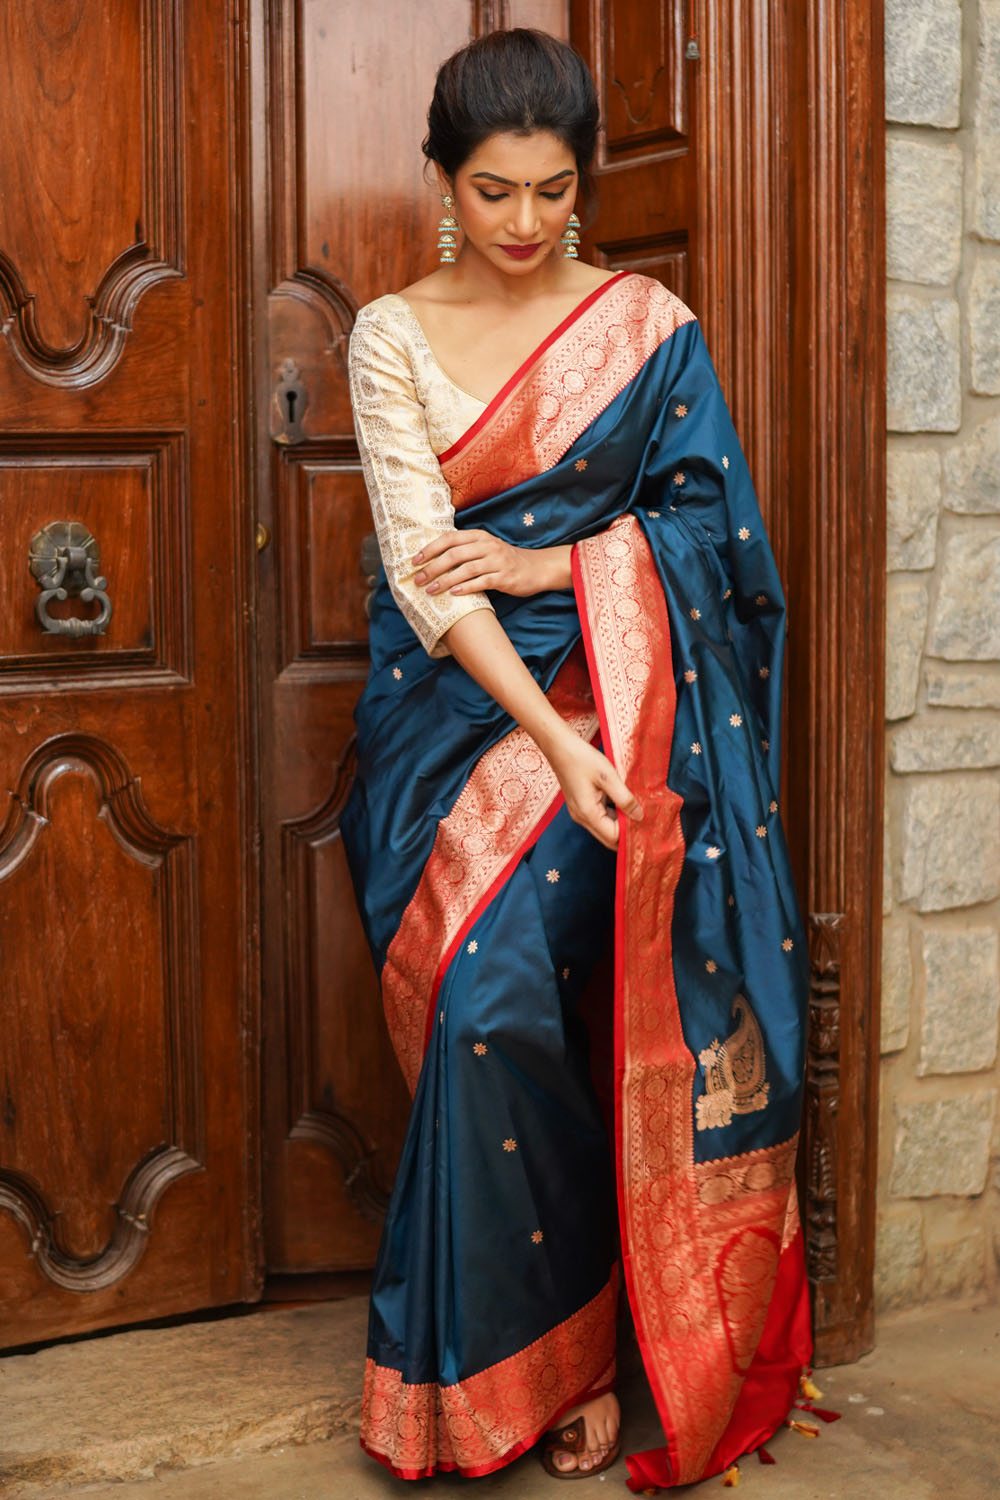 Prussian Blue Banarasi Katan Silk Saree with Chunri Buttis and Koniya Motifs | SILK MARK CERTIFIED